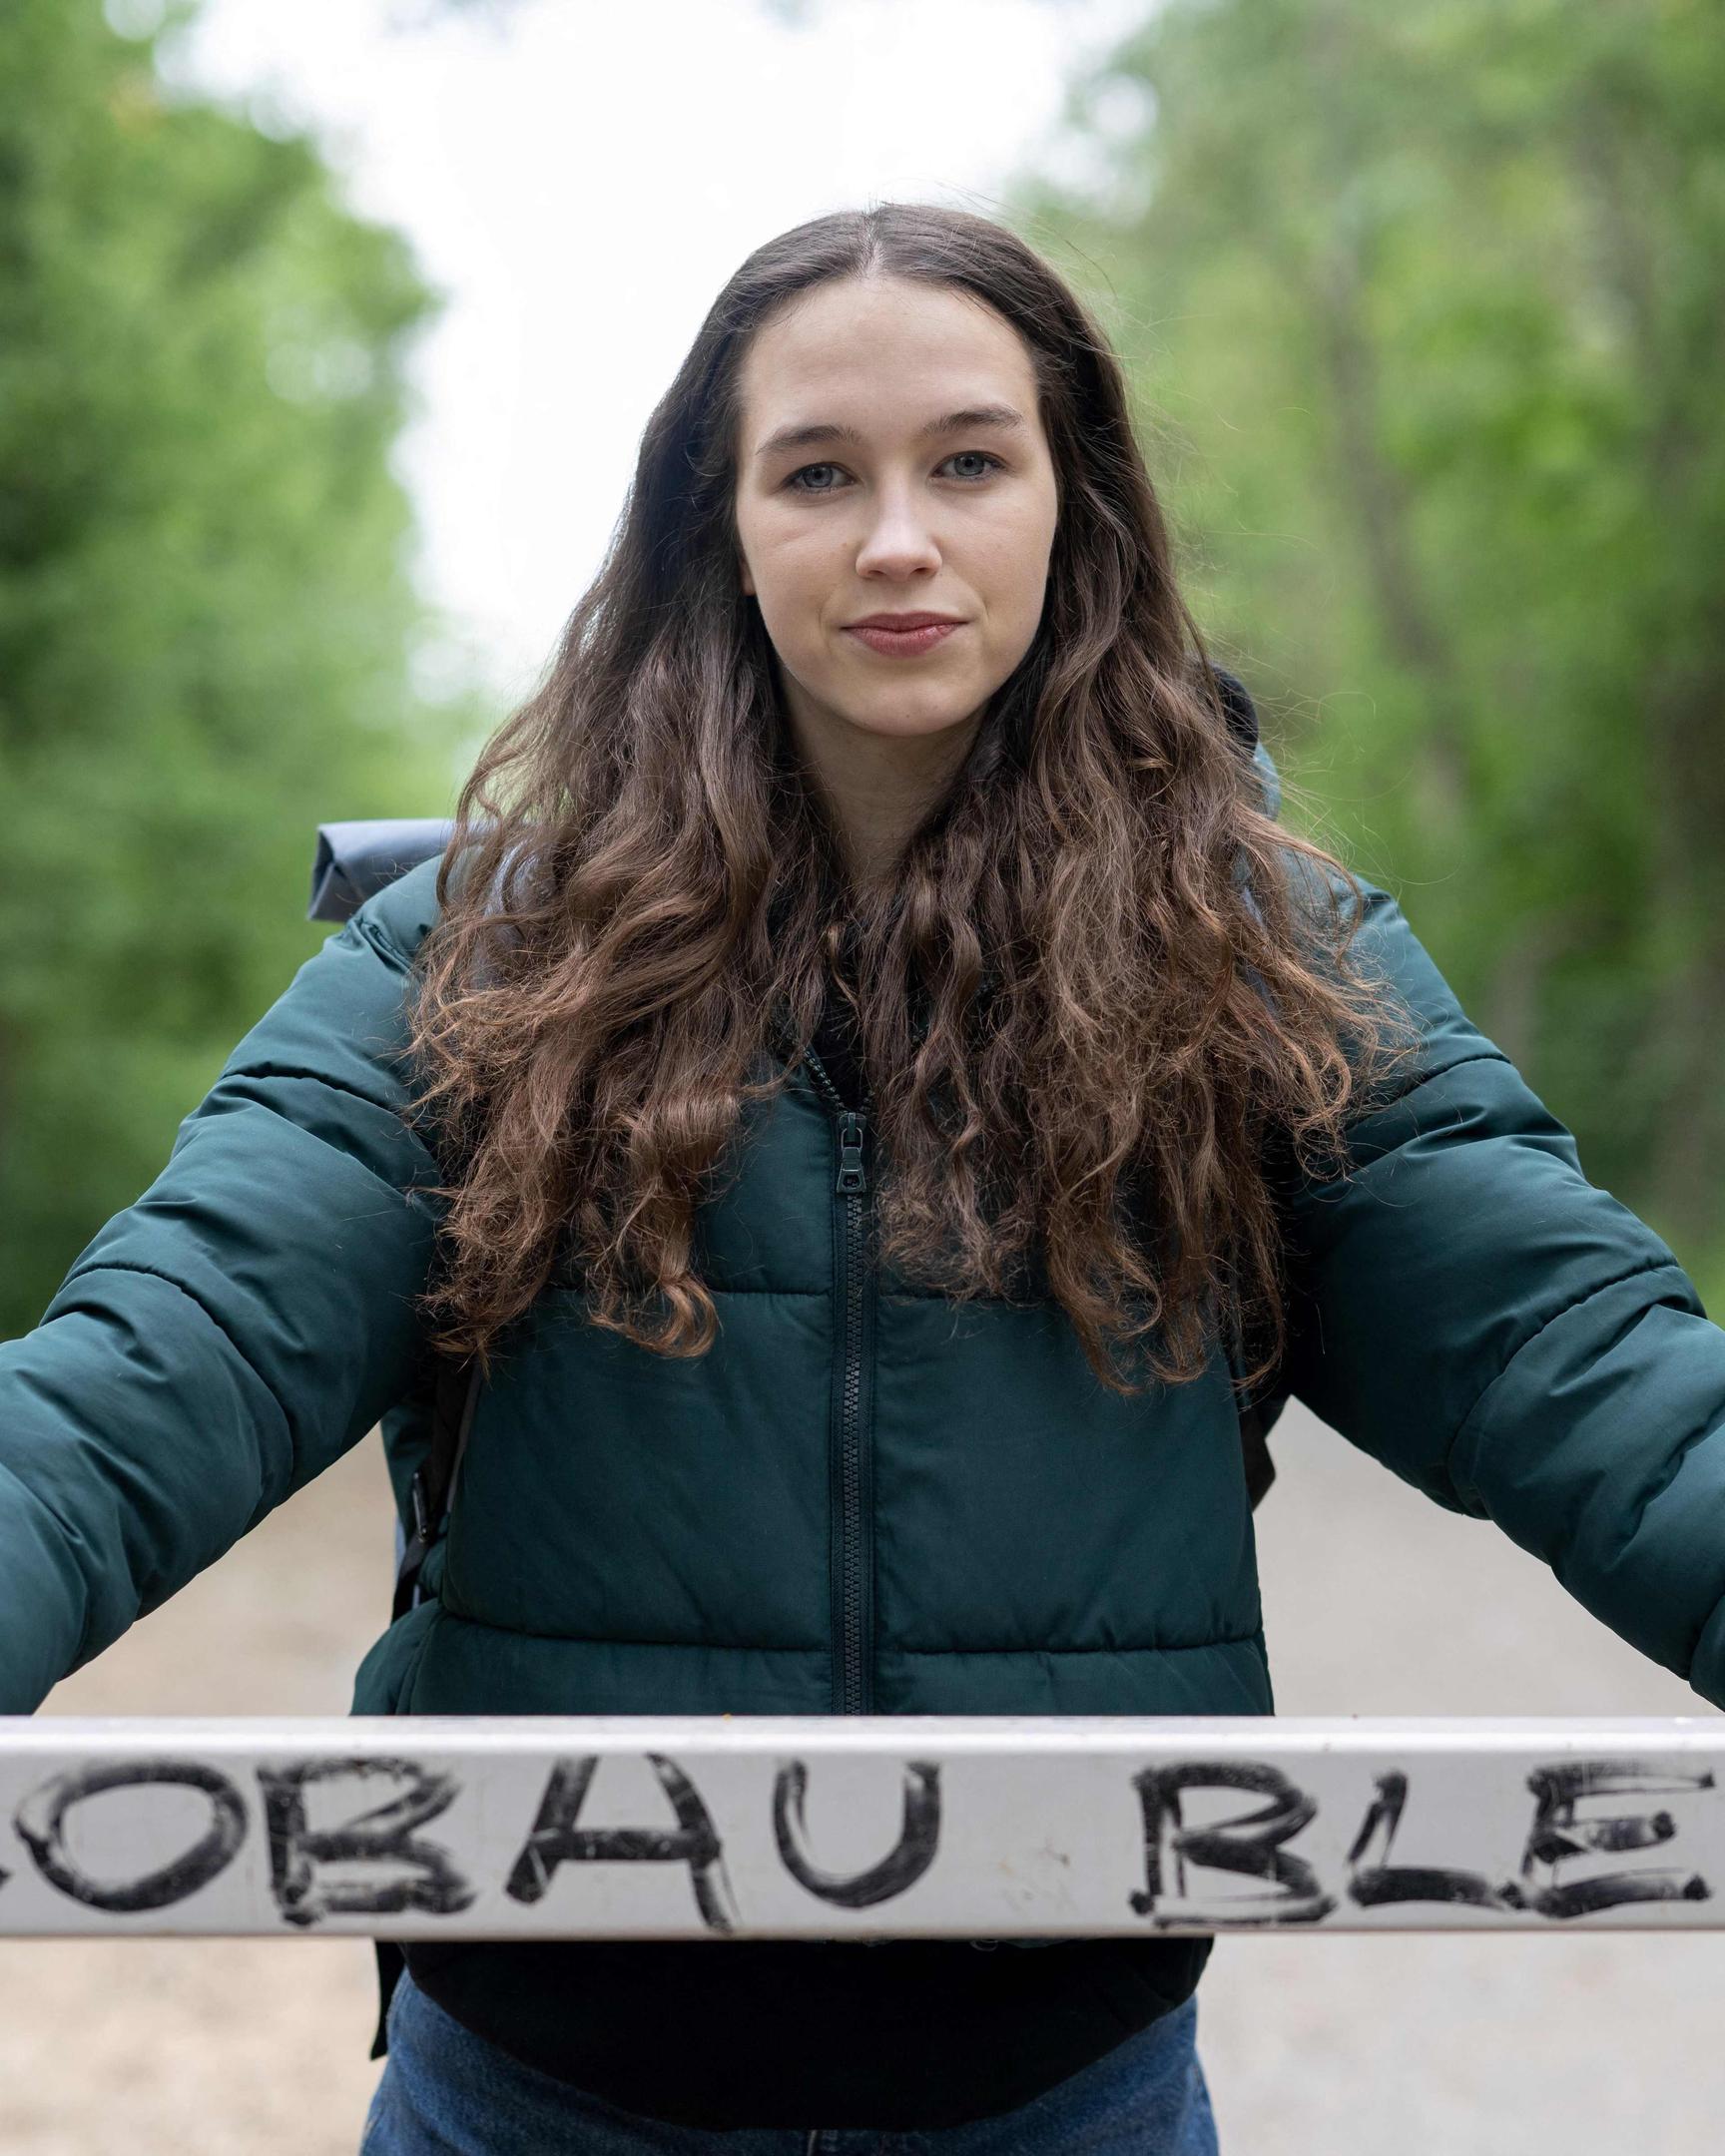 Als Klimaaktivistin hat sich Lena Schilling in der österreichischen Politik einen Namen gemacht. Nun steht sie unter Beschuss.